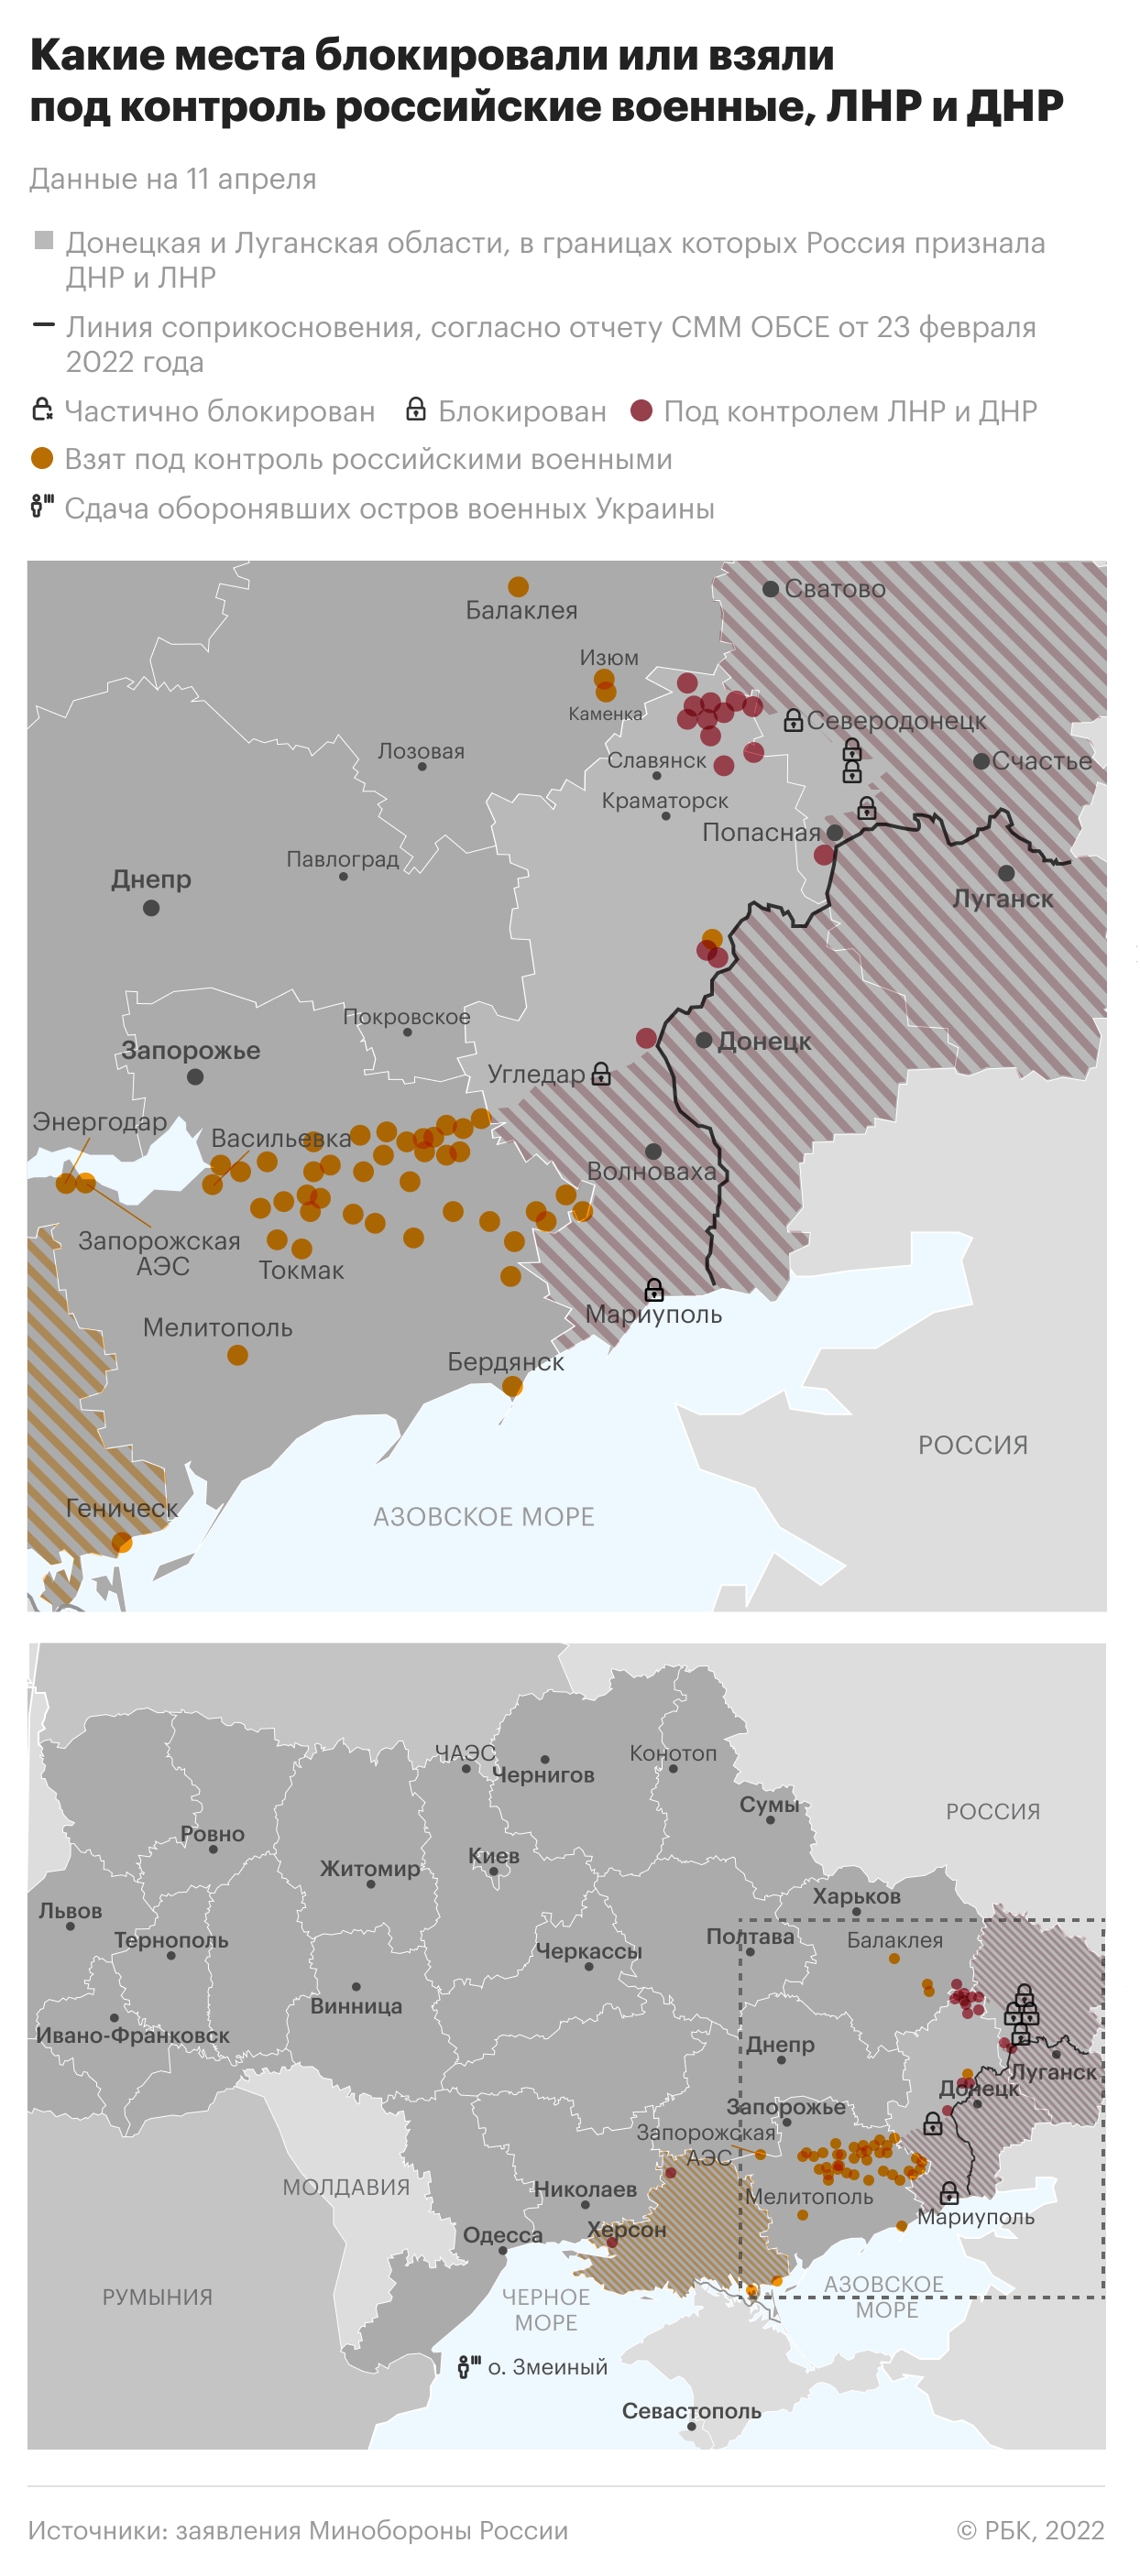 Минобороны сообщило о поражении 139 военных объектов Украины за день"/>













